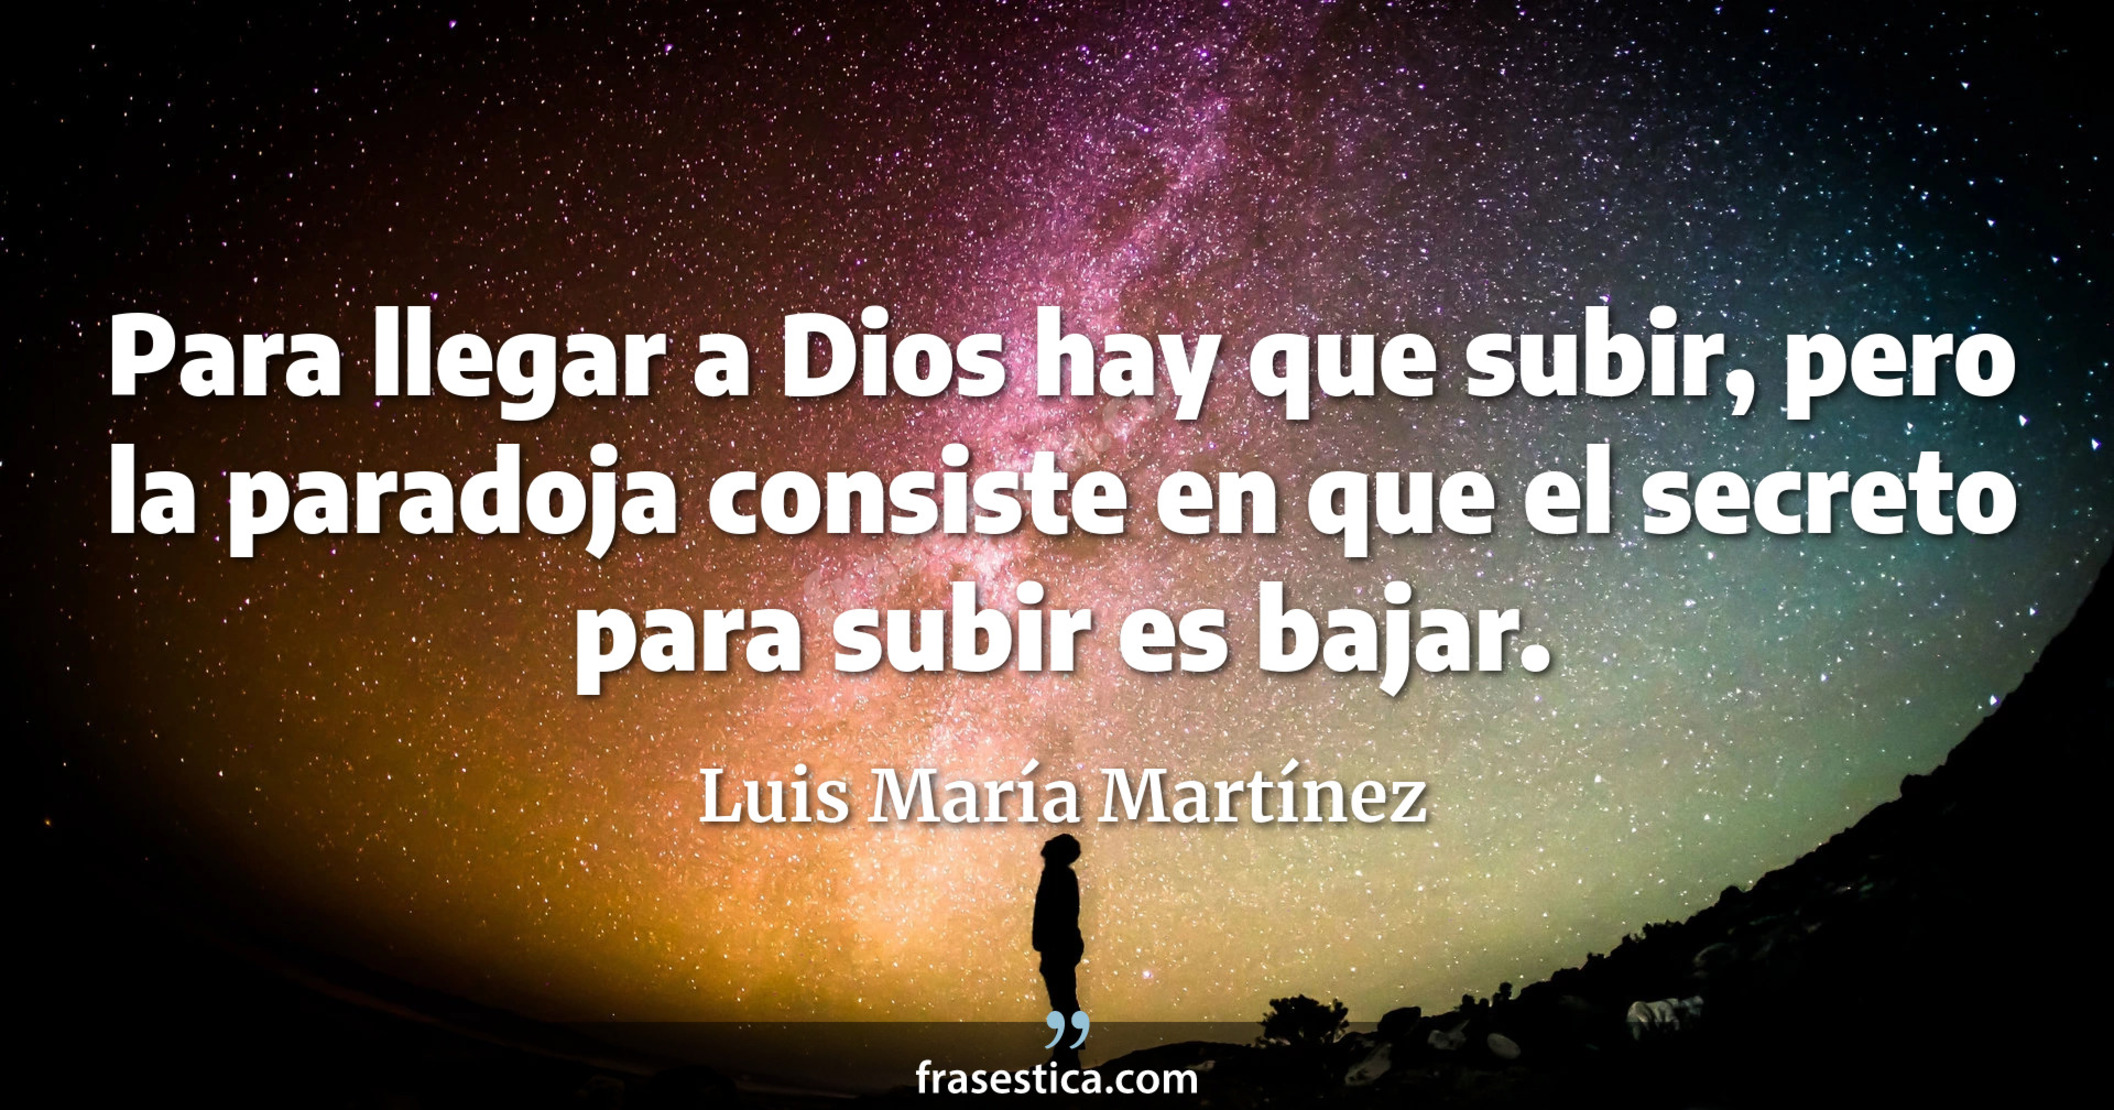 Para llegar a Dios hay que subir, pero la paradoja consiste en que el secreto para subir es bajar. - Luis María Martínez